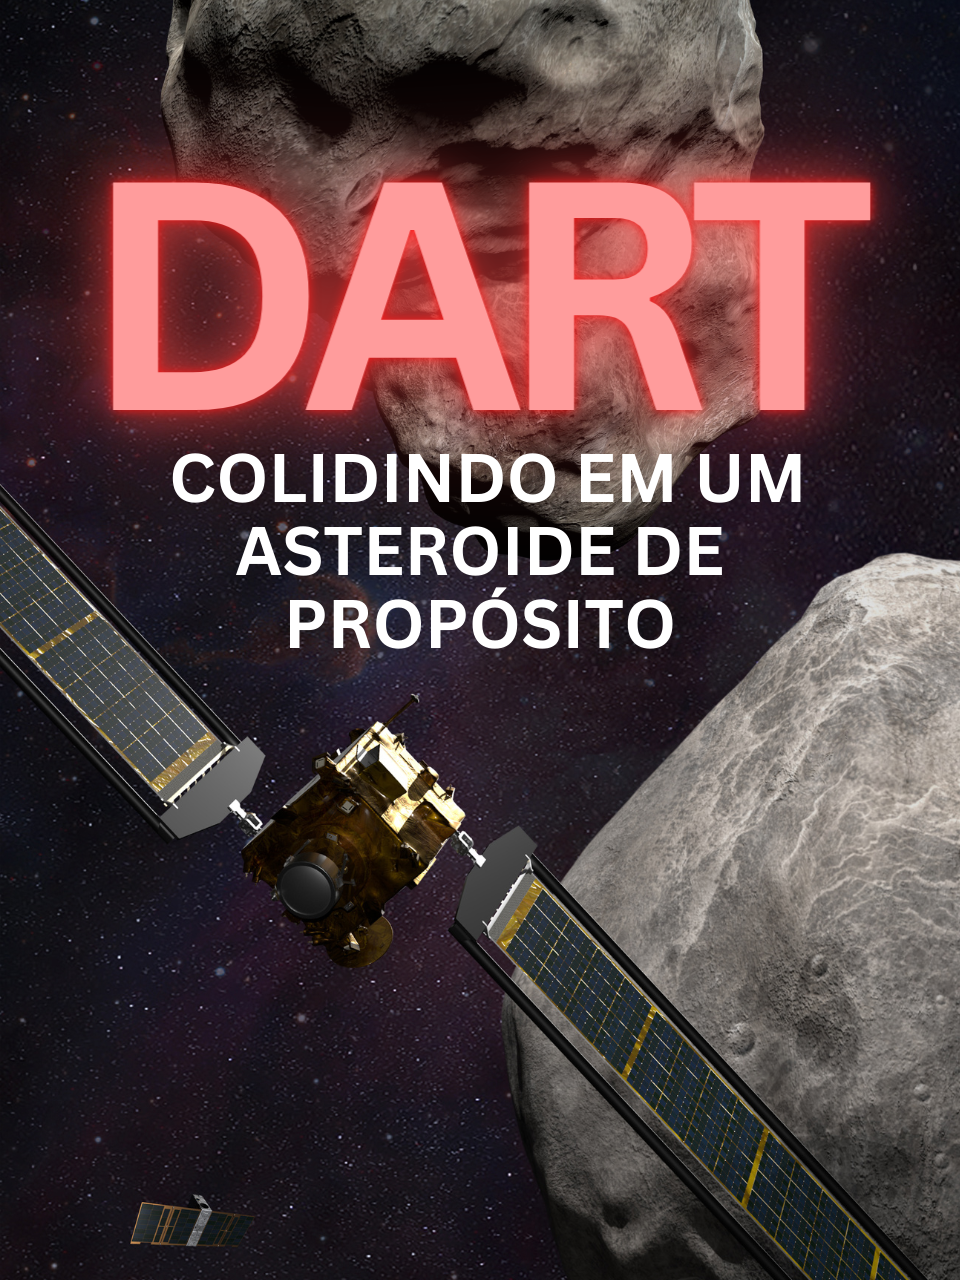 DART - Colidindo em um asteroide de propósito